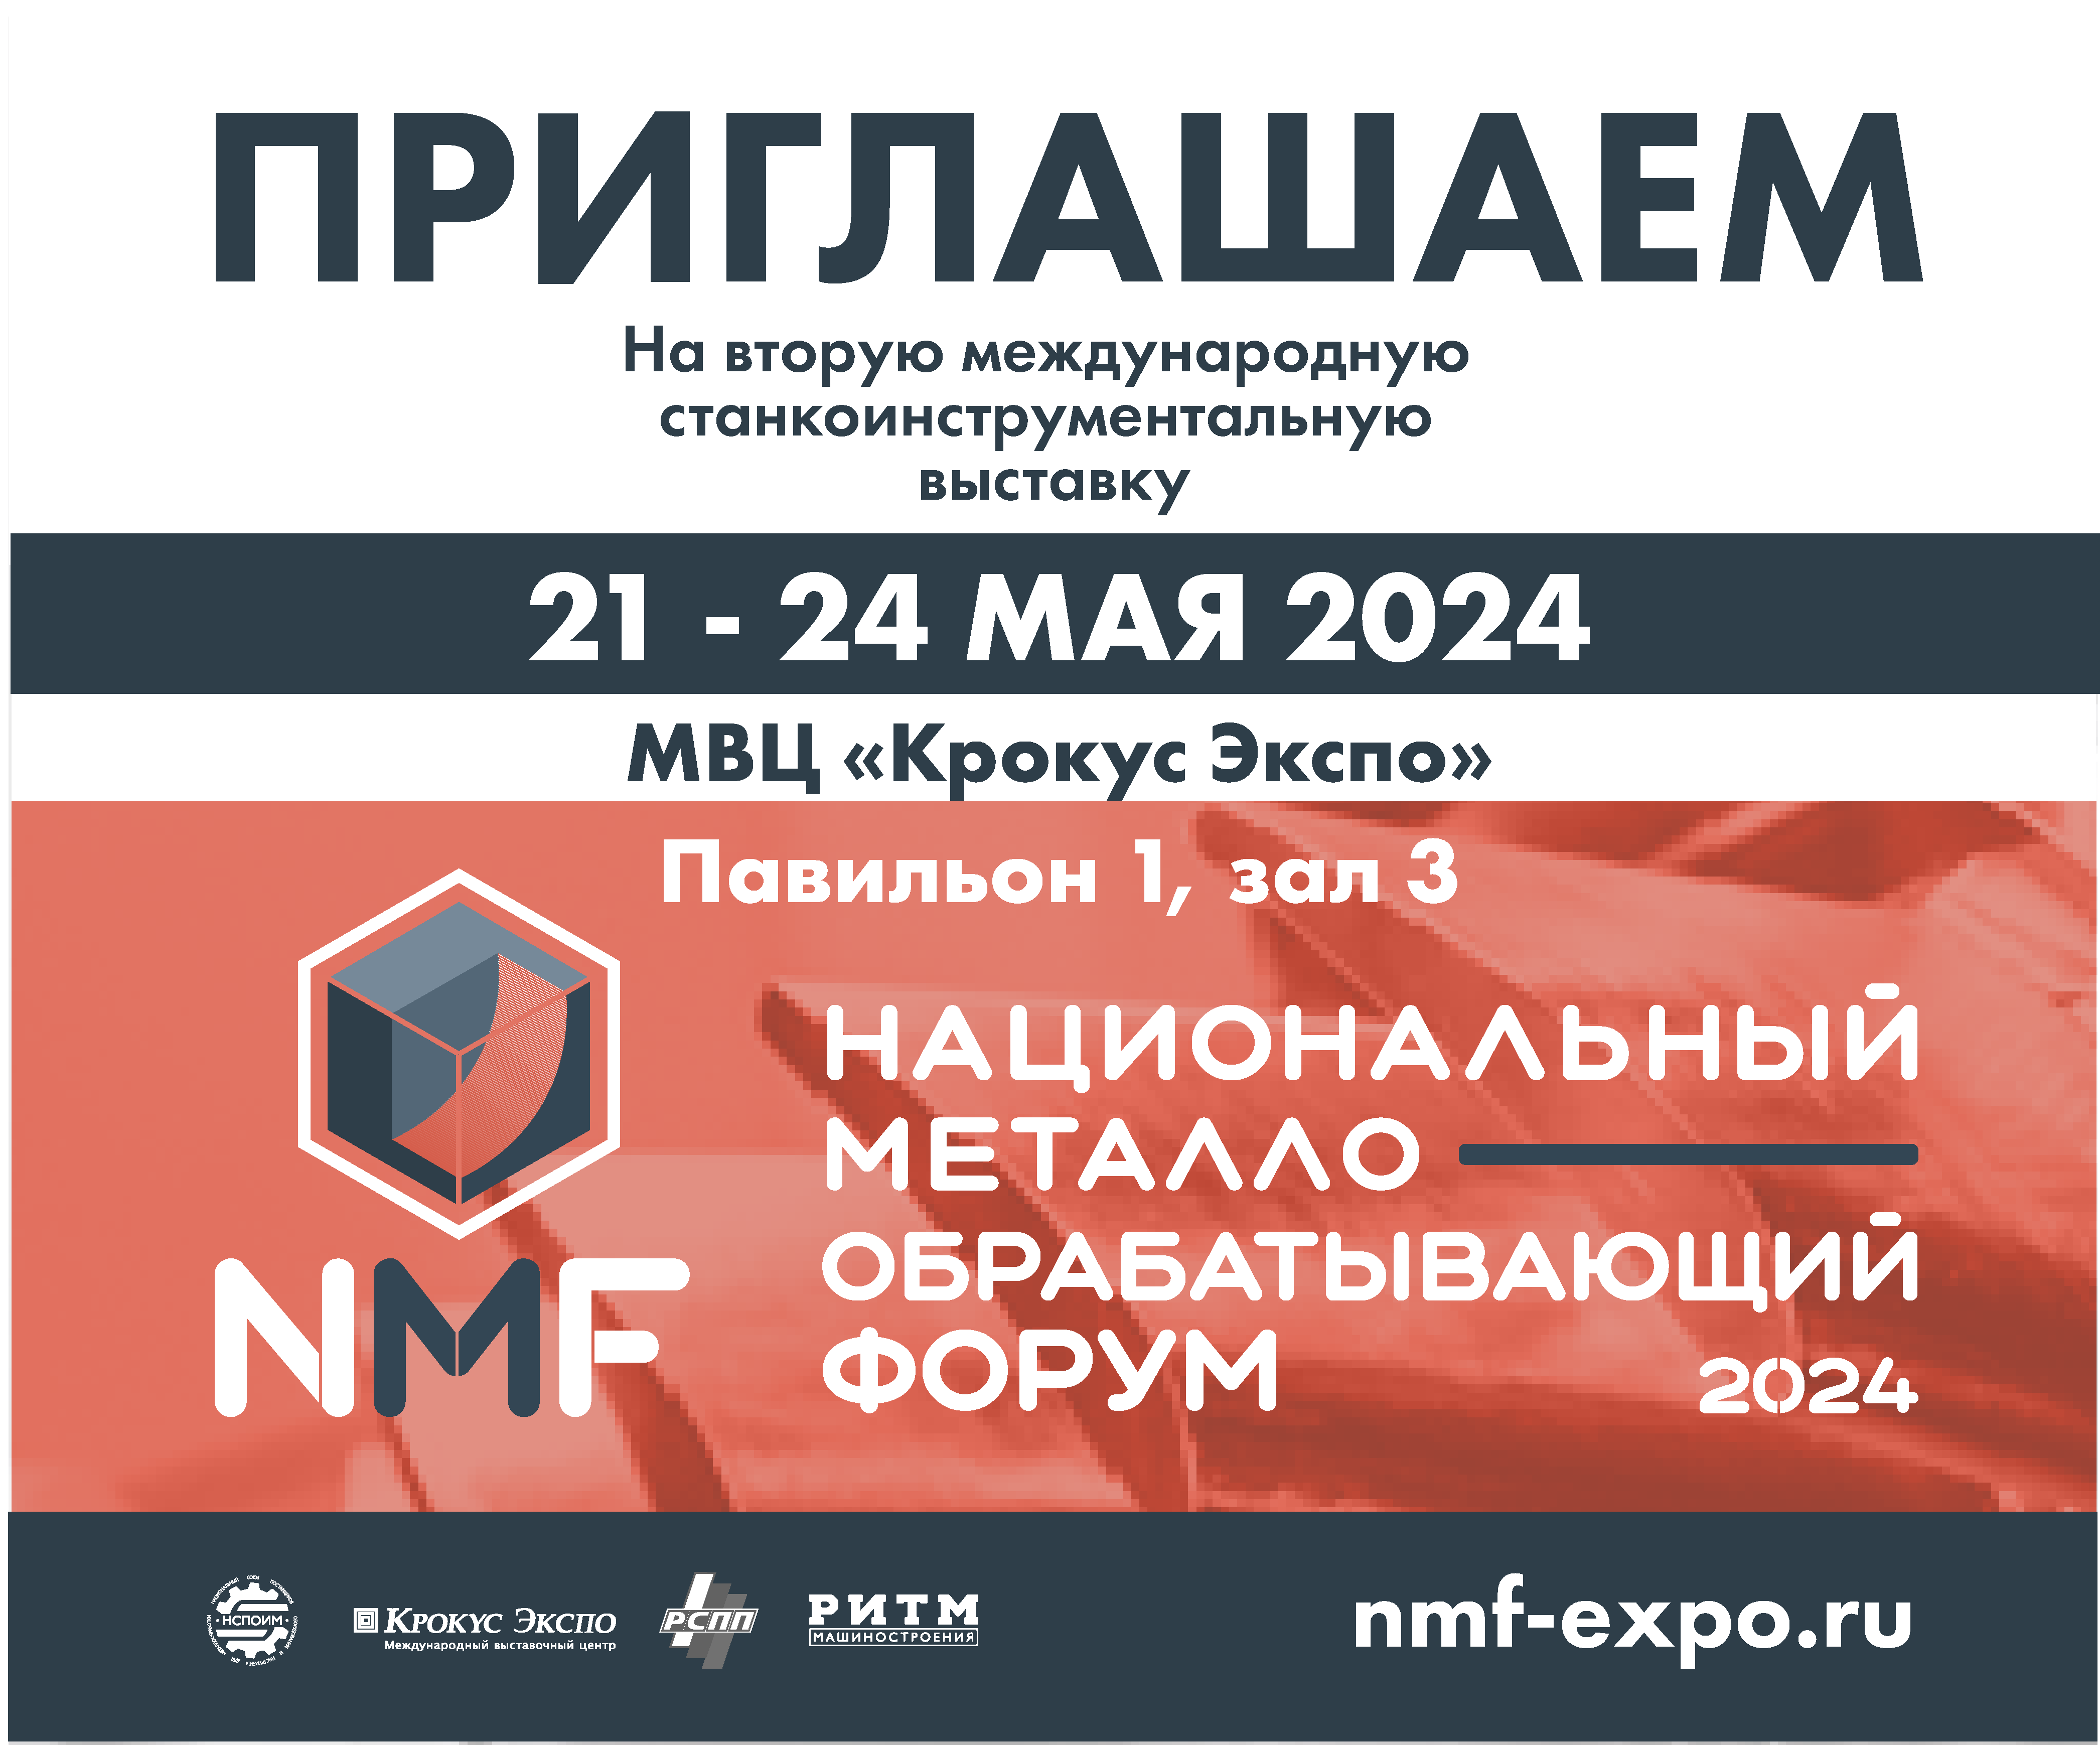 Добро пожаловать на экспертную выставку металлообработки NMF 2024!